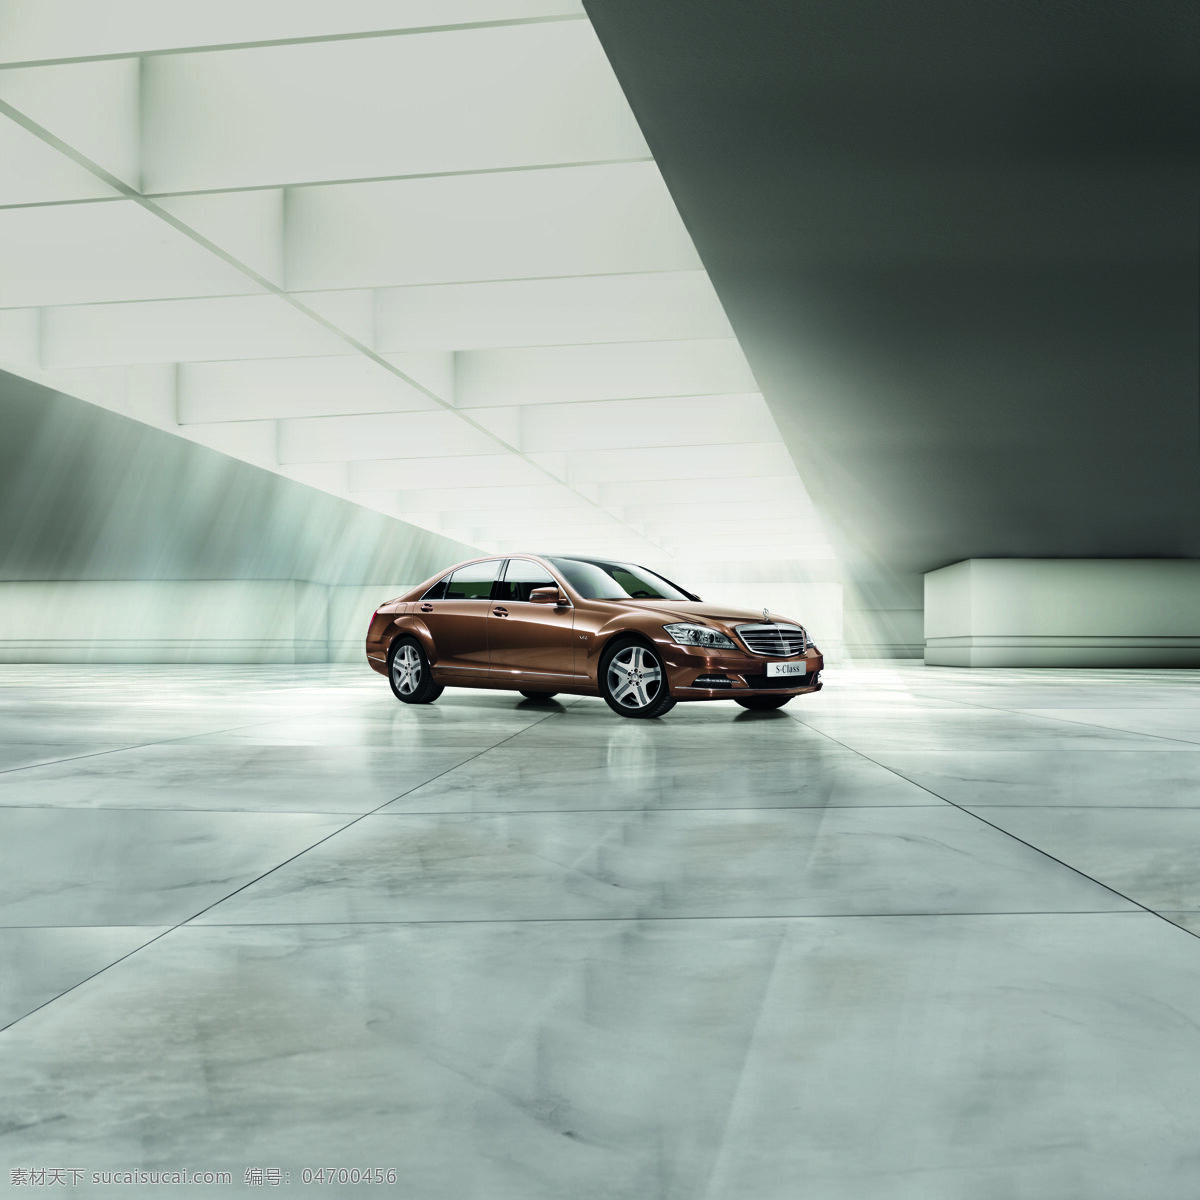 全新 一代 梅 赛 德斯 奔驰s级轿车 阳光 交通工具 现代科技